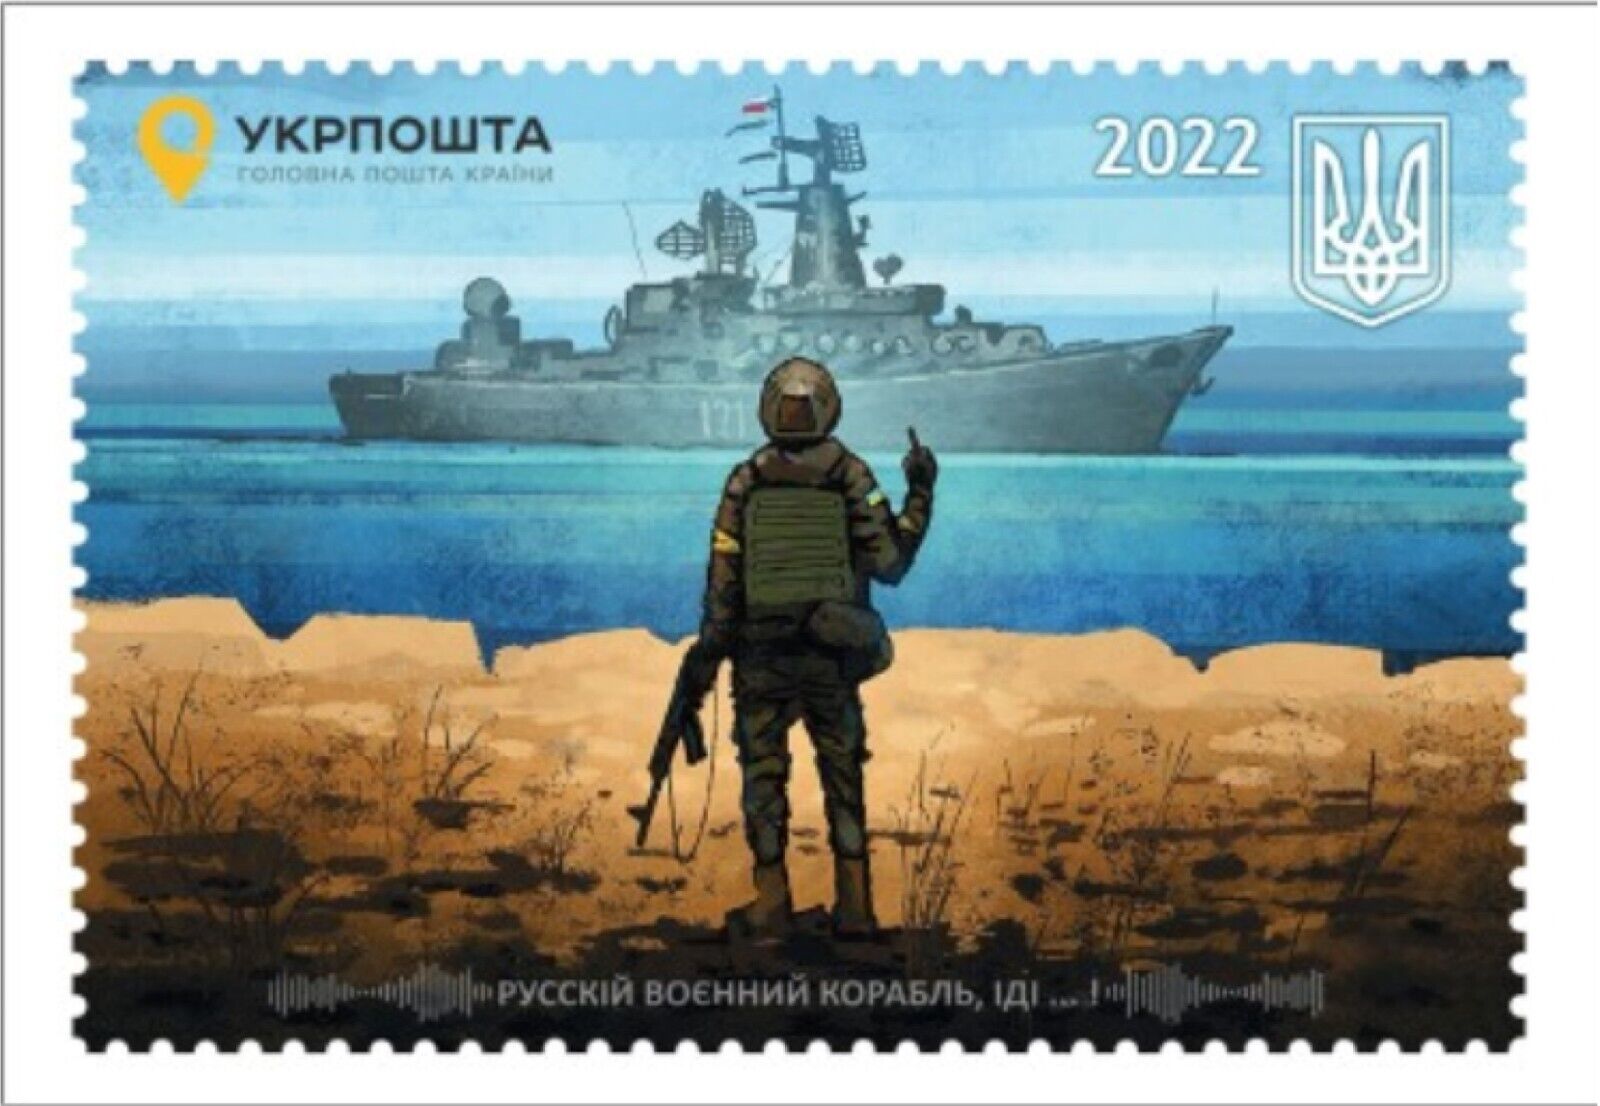 ORIGINAL.BEST BRAND. Full set "Russian warship go to ...!" War in Ukraine. Без бренда - фотография #6